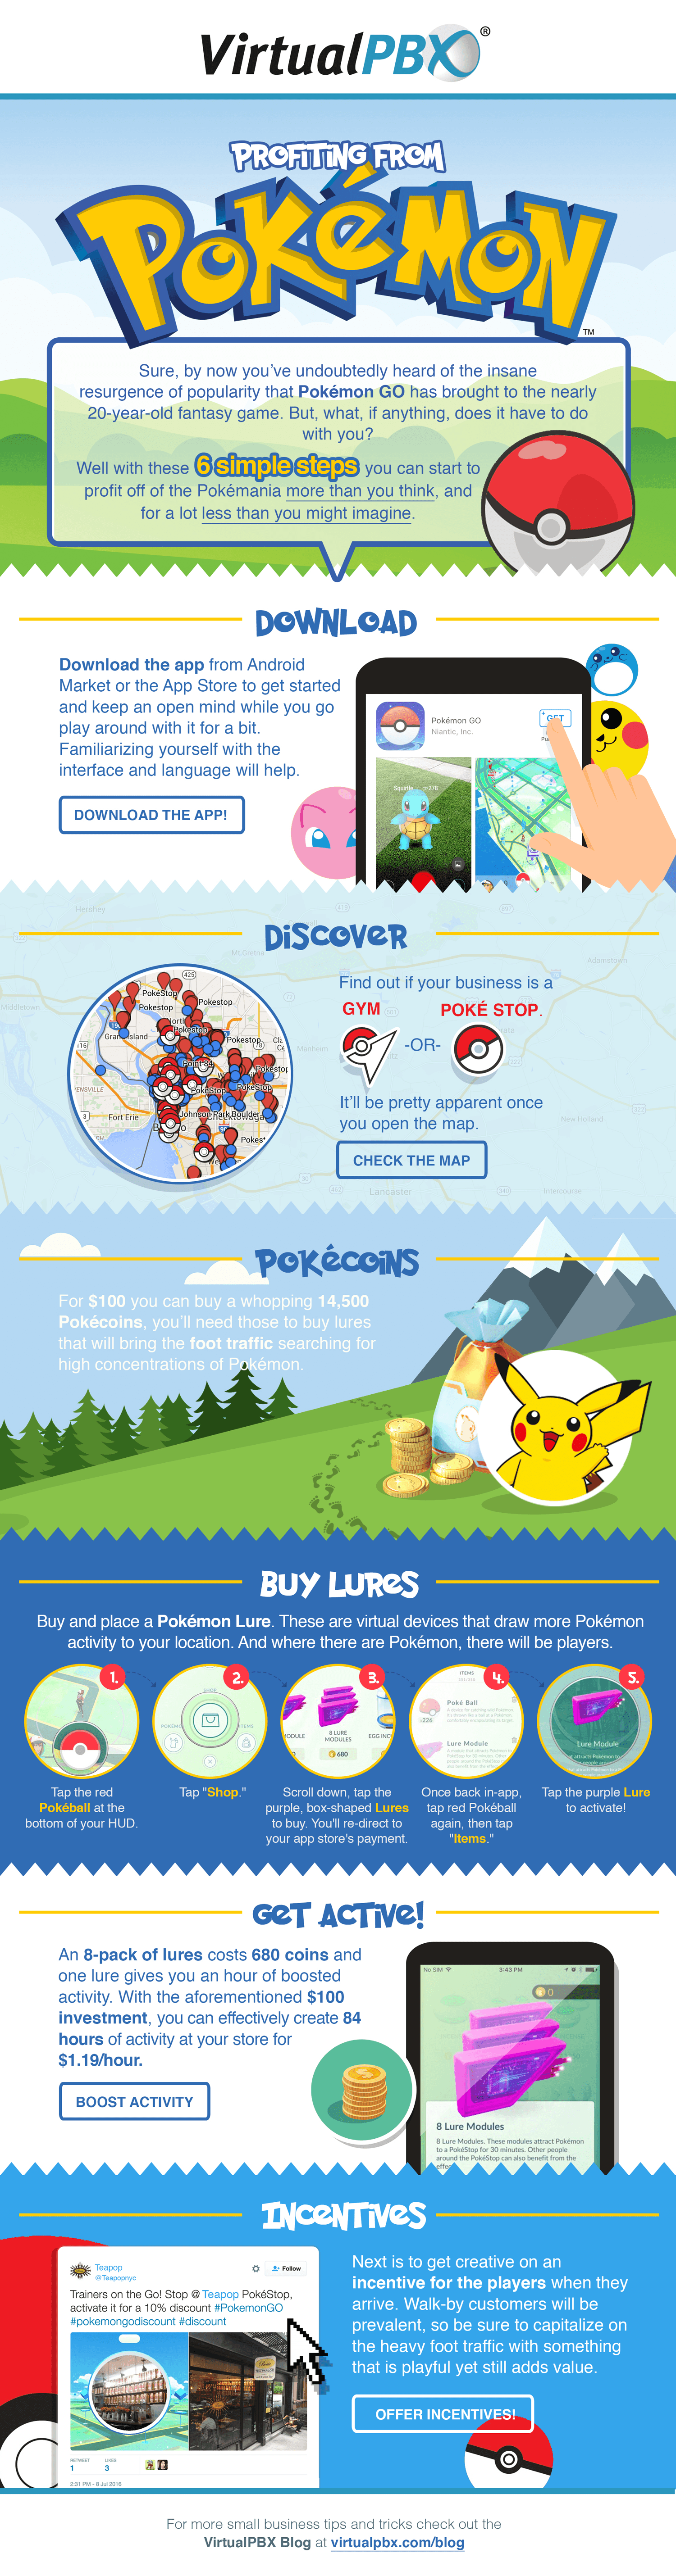 Profiting from Pokémon GO